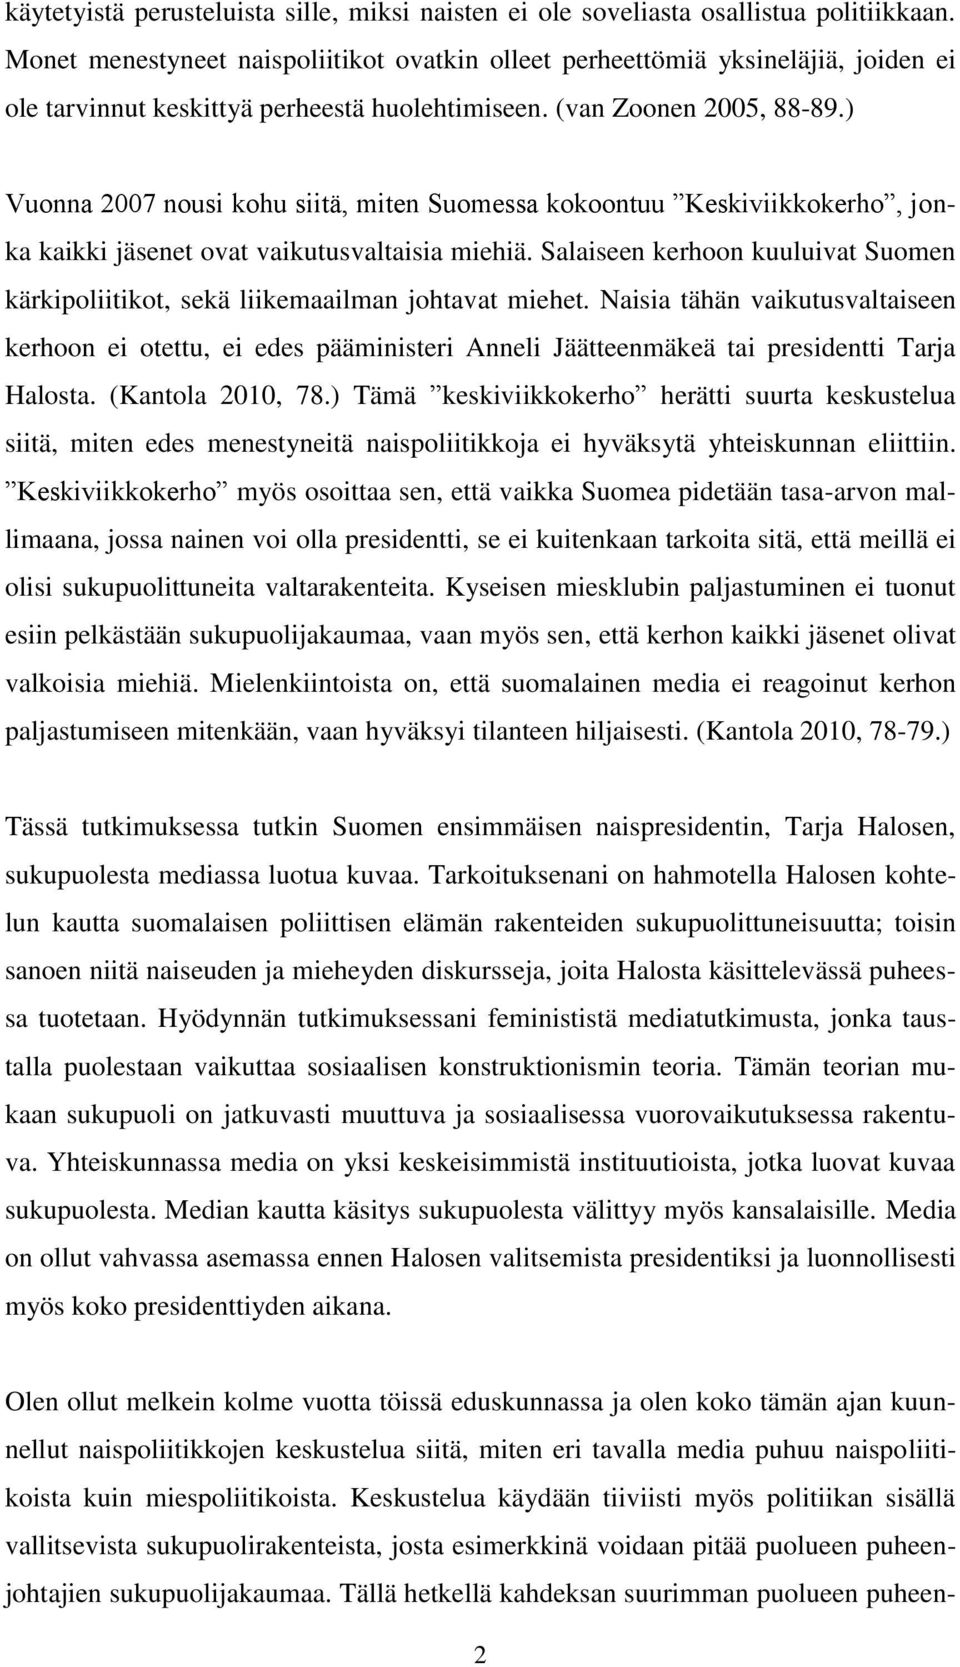 ) Vuonna 2007 nousi kohu siitä, miten Suomessa kokoontuu Keskiviikkokerho, jonka kaikki jäsenet ovat vaikutusvaltaisia miehiä.